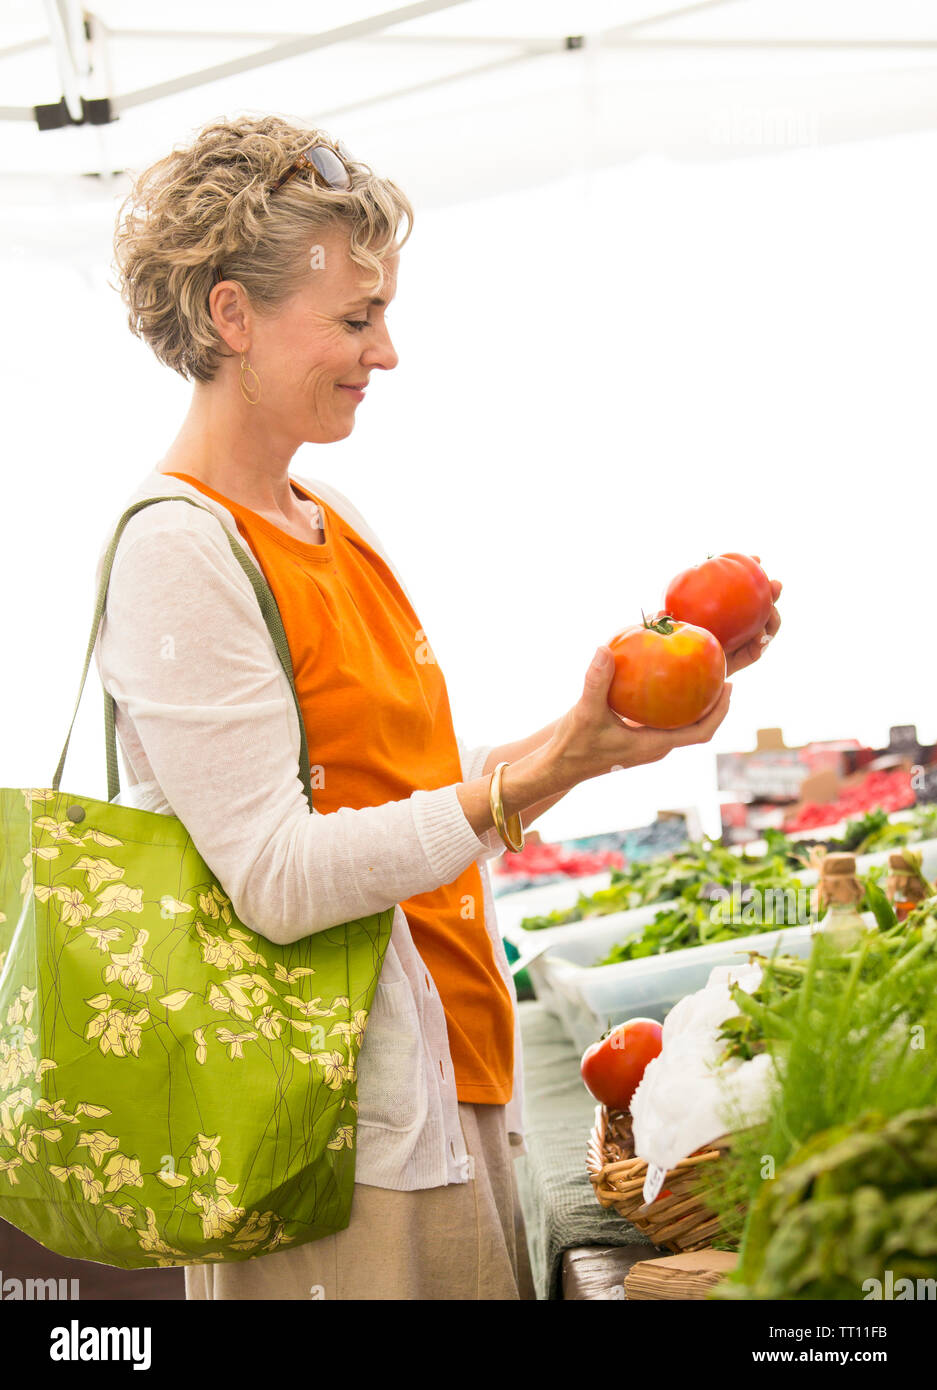 Belle, heureuse, saine middle aged woman shopping pour produits frais biologiques tomates à farmers market Banque D'Images